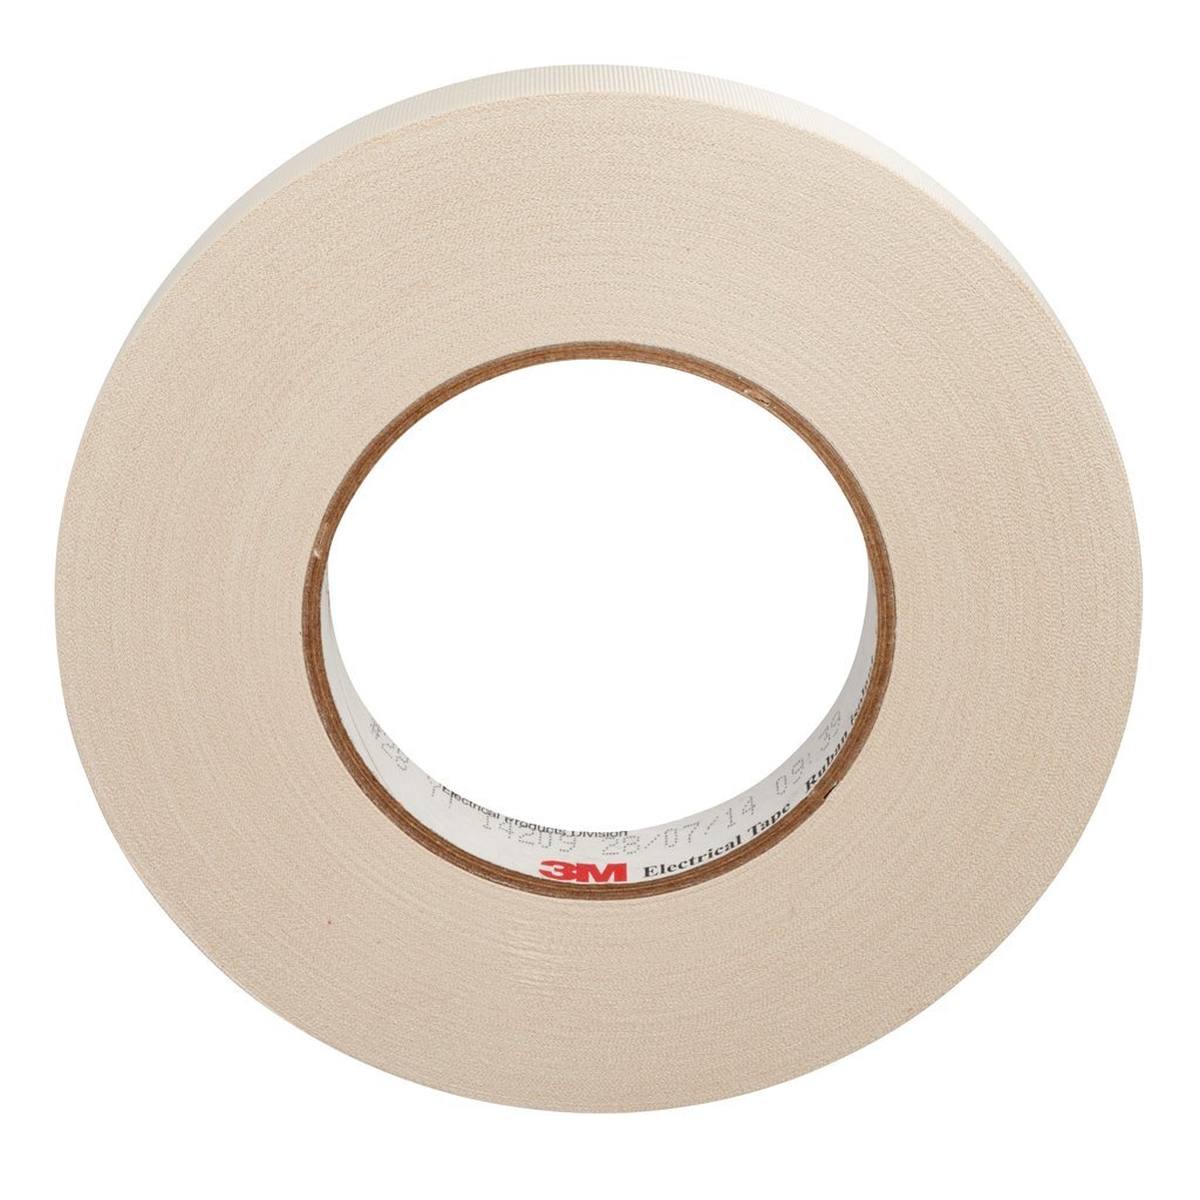 3M ET 28 Acetate fabric tape, white, 610 mm x 66 m, 0.2 mm